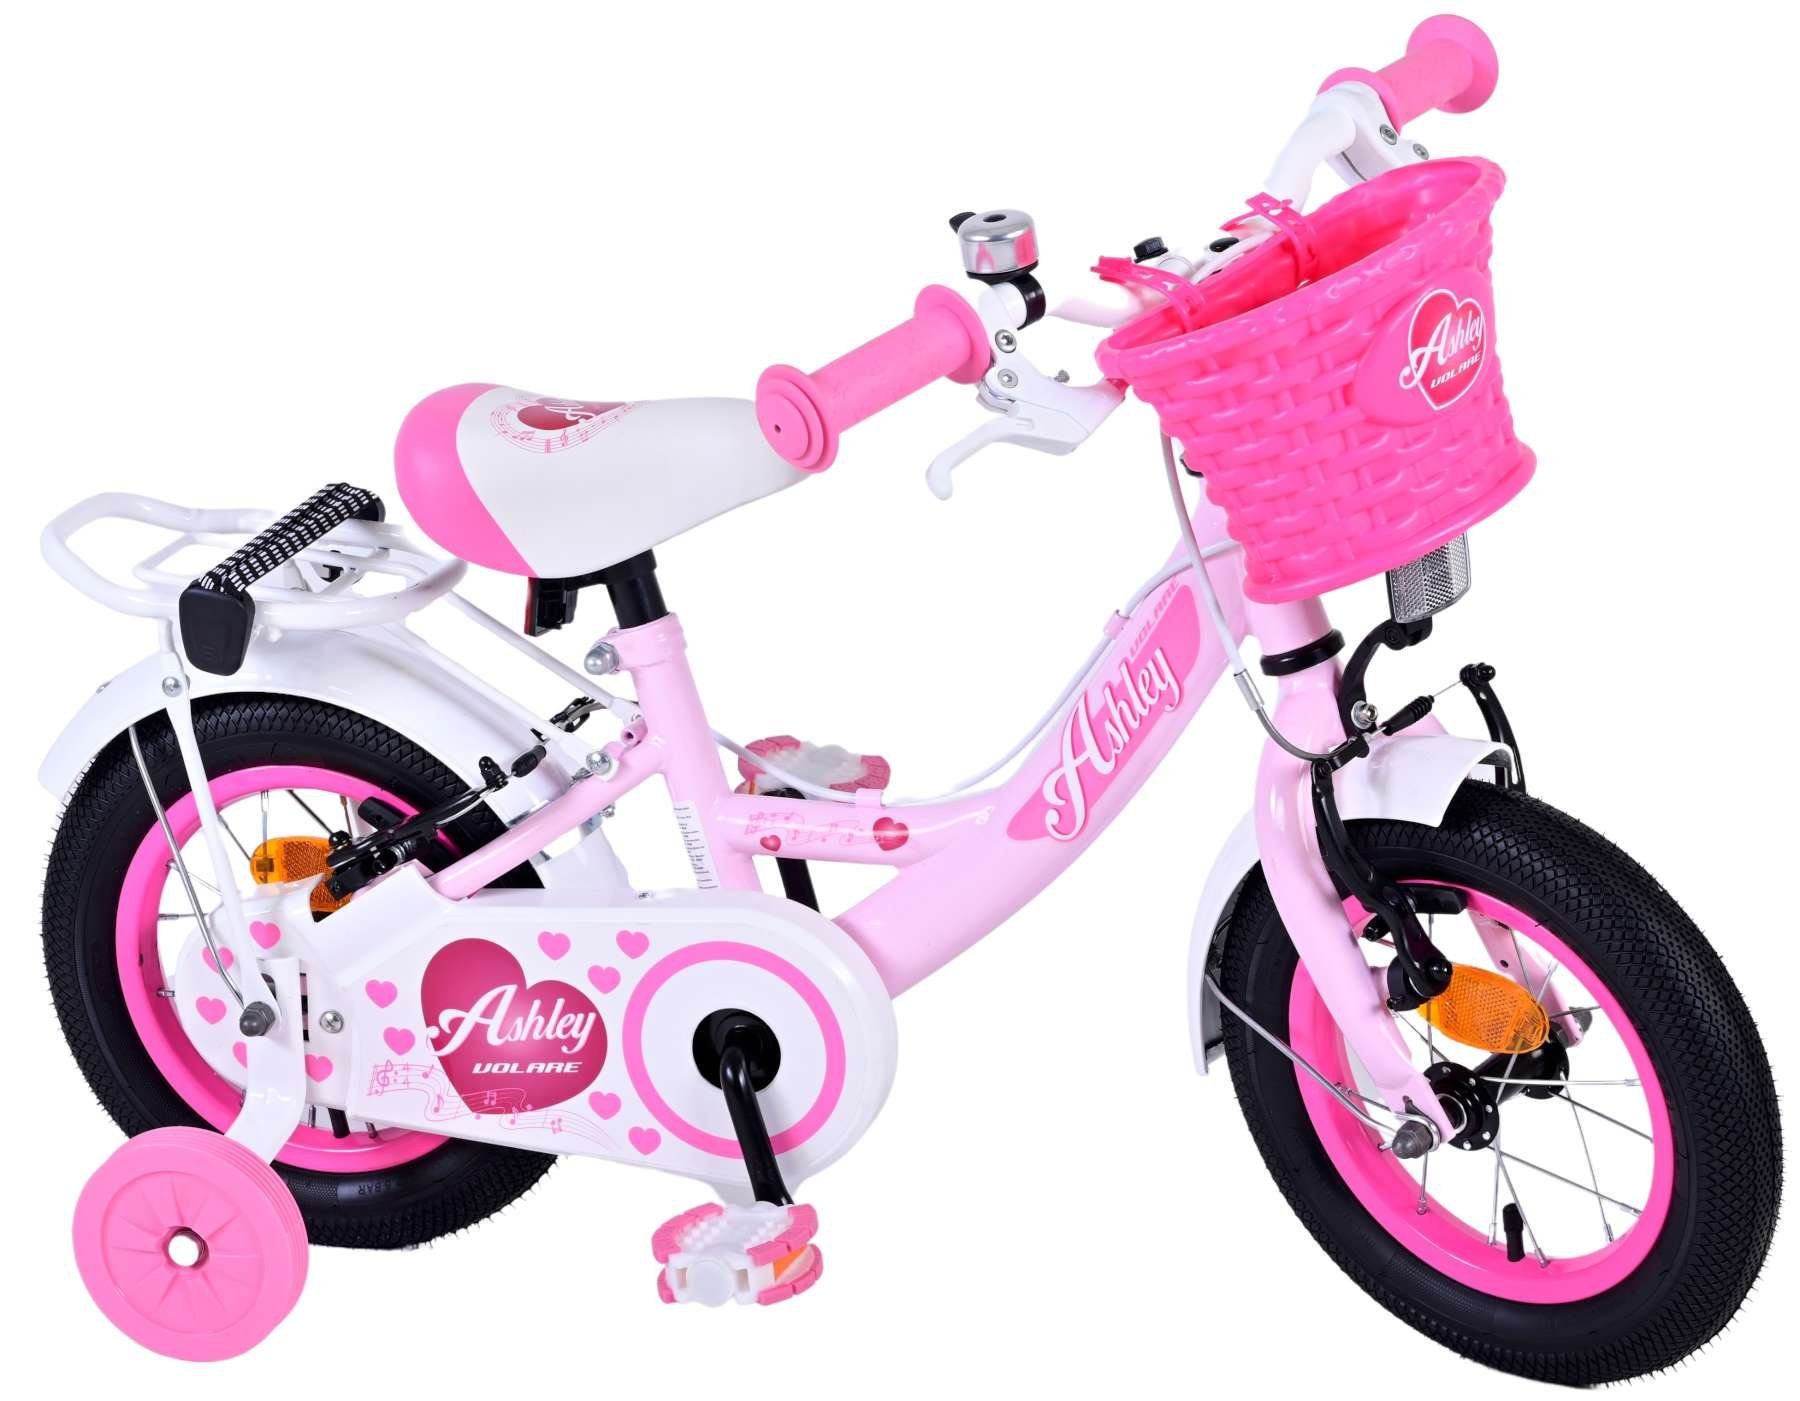 Volare Kinderfahrrad Ashley für Mädchen - mit Zwei Handbremsen - 85% zusammengebaut, bis 60 kg, 12,14,16,18 Zoll, Luftbereifung, einstellbare Lenkerhöhe Pink